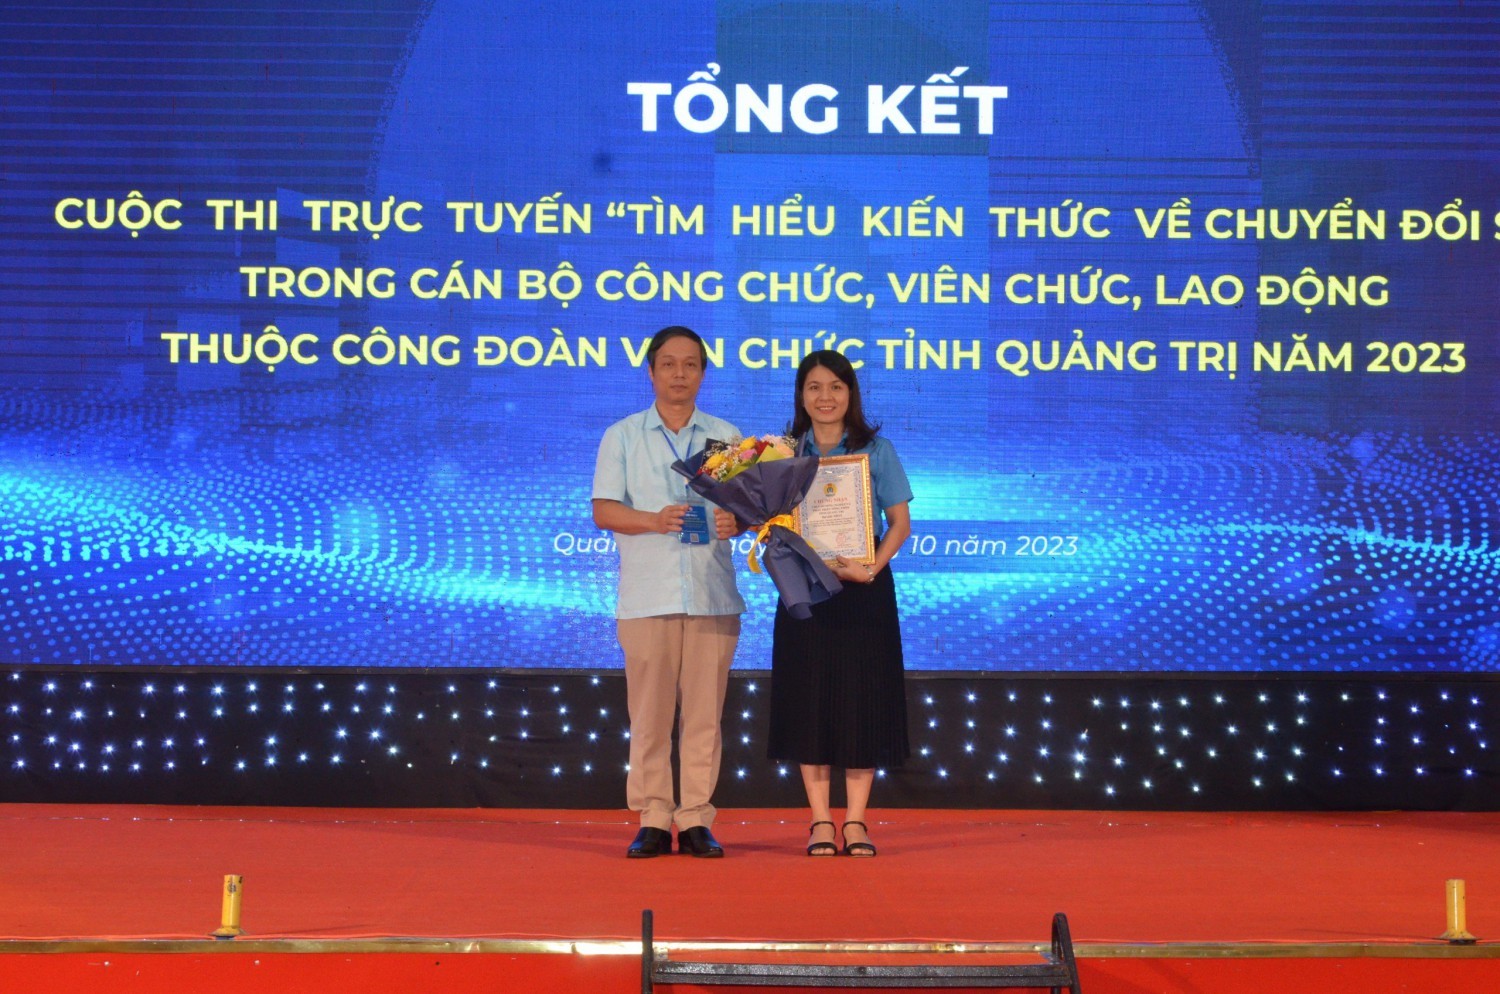 Tổng kết và trao giải Cuộc thi trực tuyến “Tìm hiểu kiến thức về Chuyển đổi số” trong CCVCLĐ thuộc CĐVC tỉnh Quảng Trị năm 2023